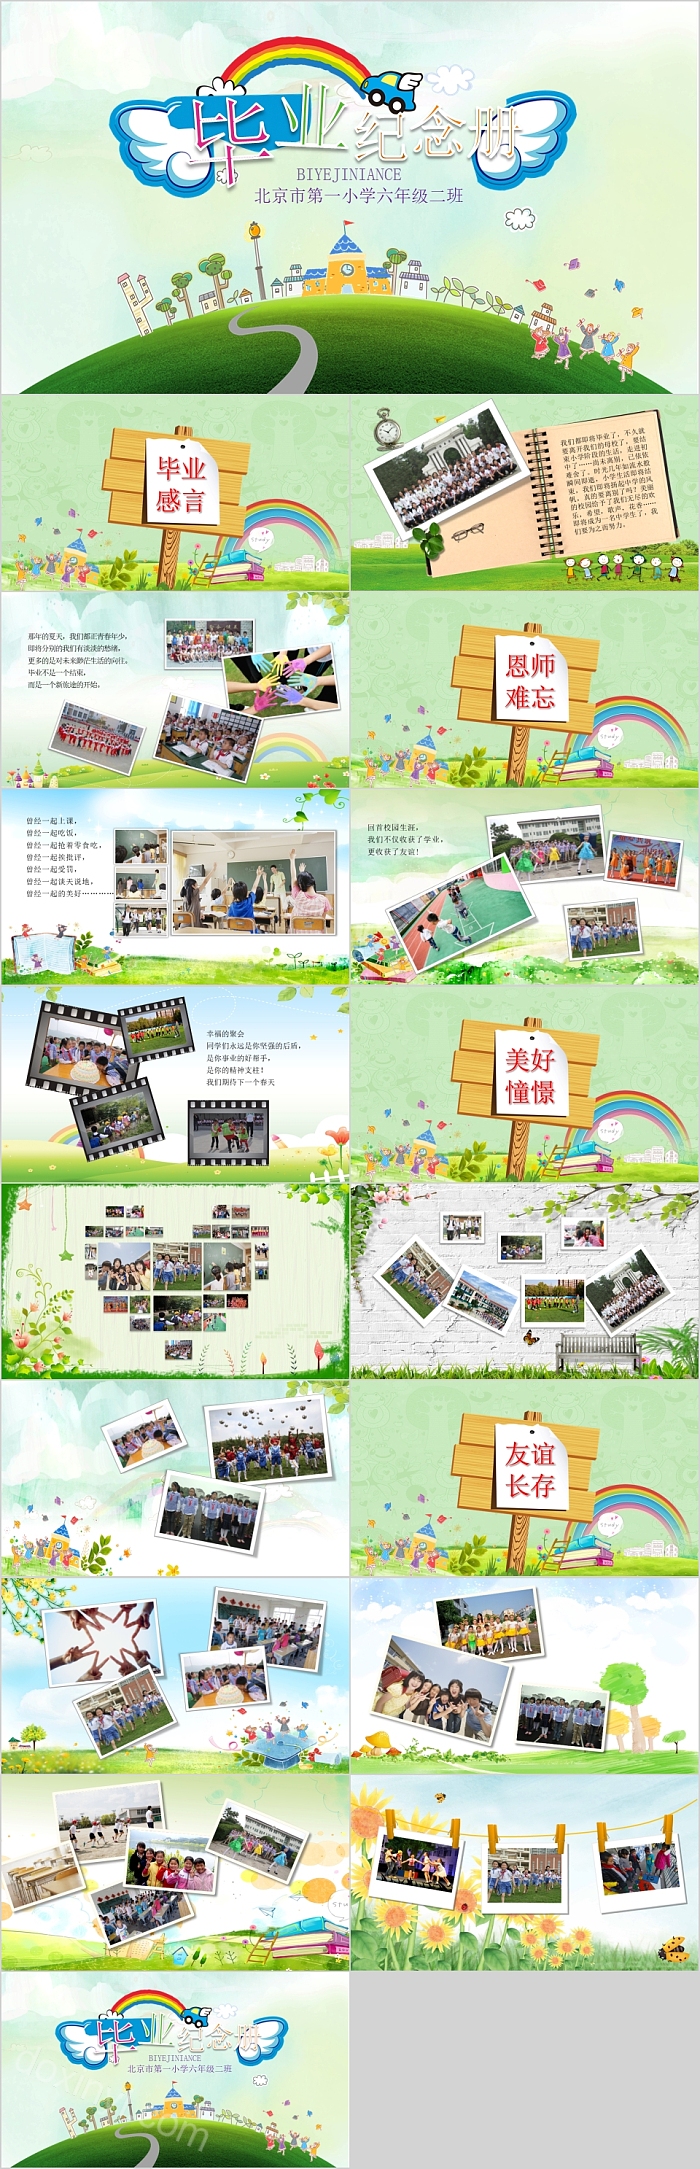 北京市第一小学毕业纪念册PPT模板